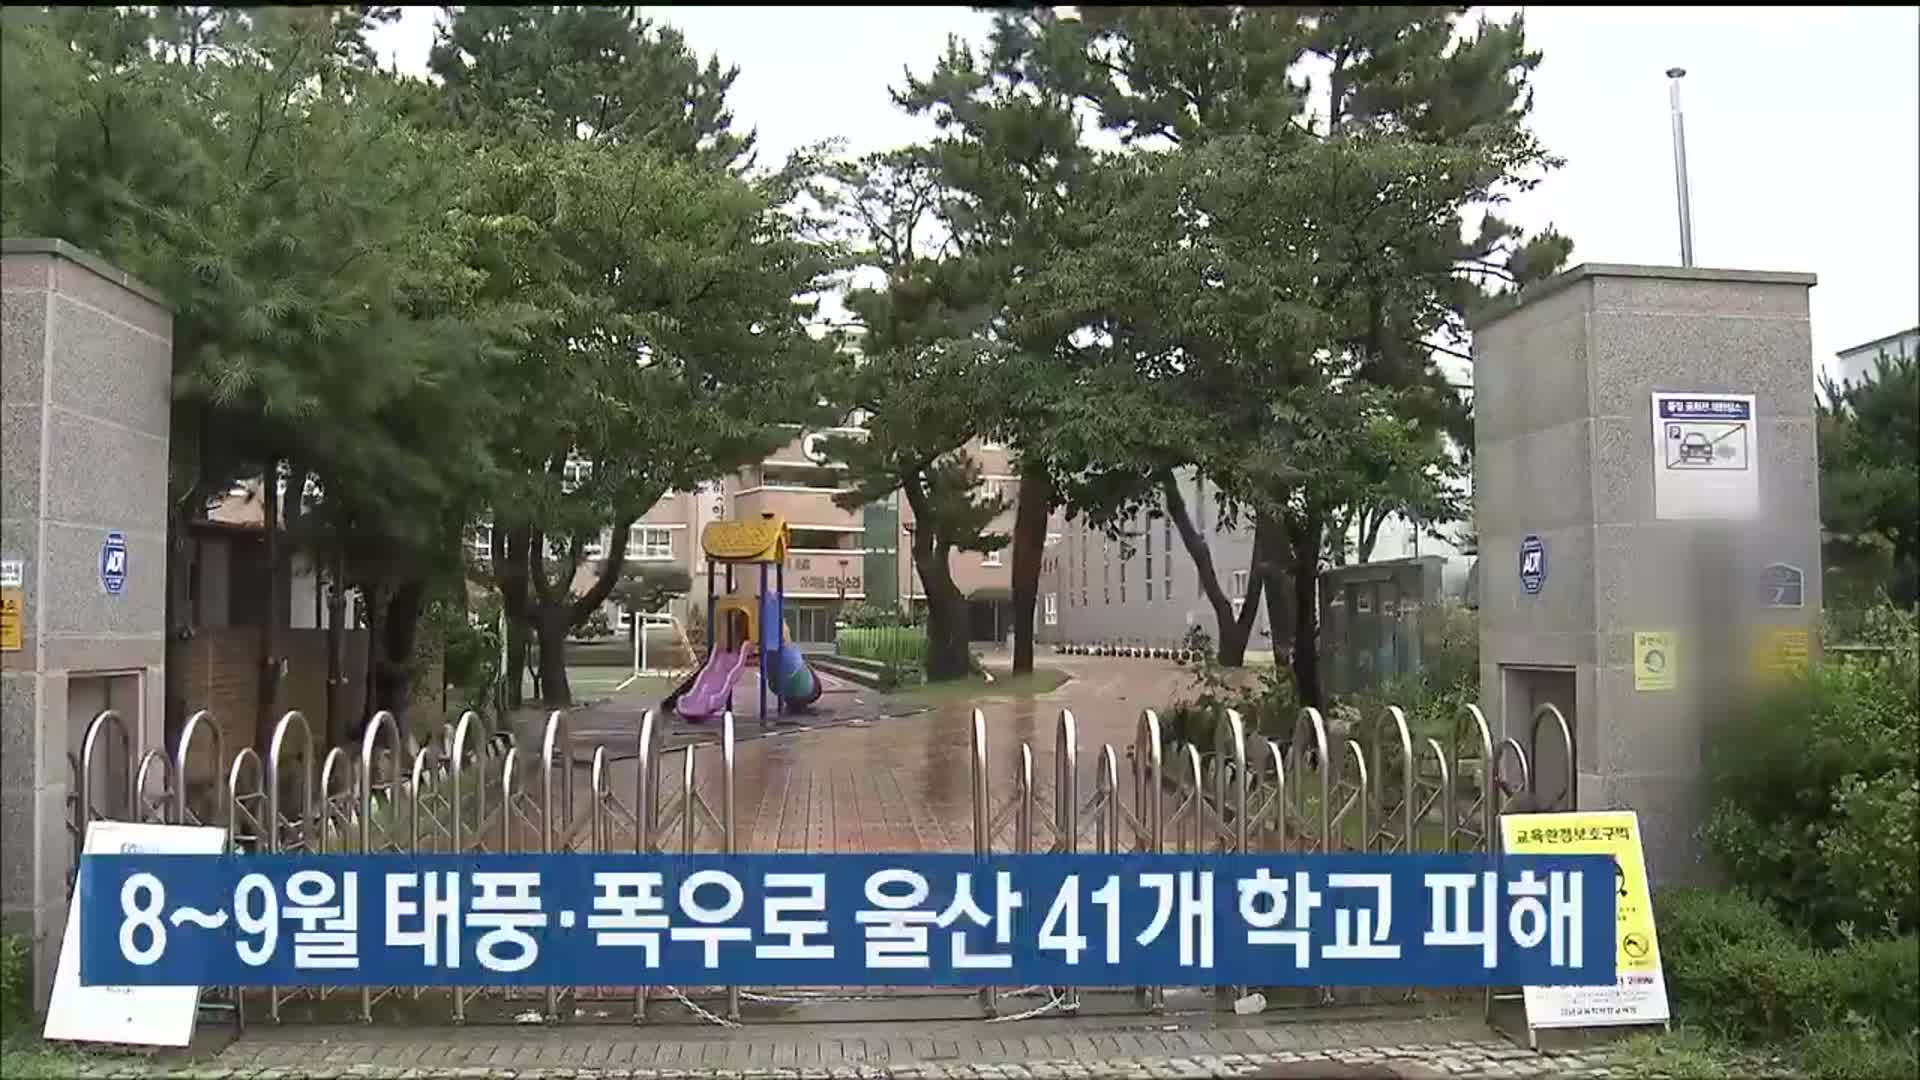 8~9월 태풍·폭우로 울산 41개 학교 피해